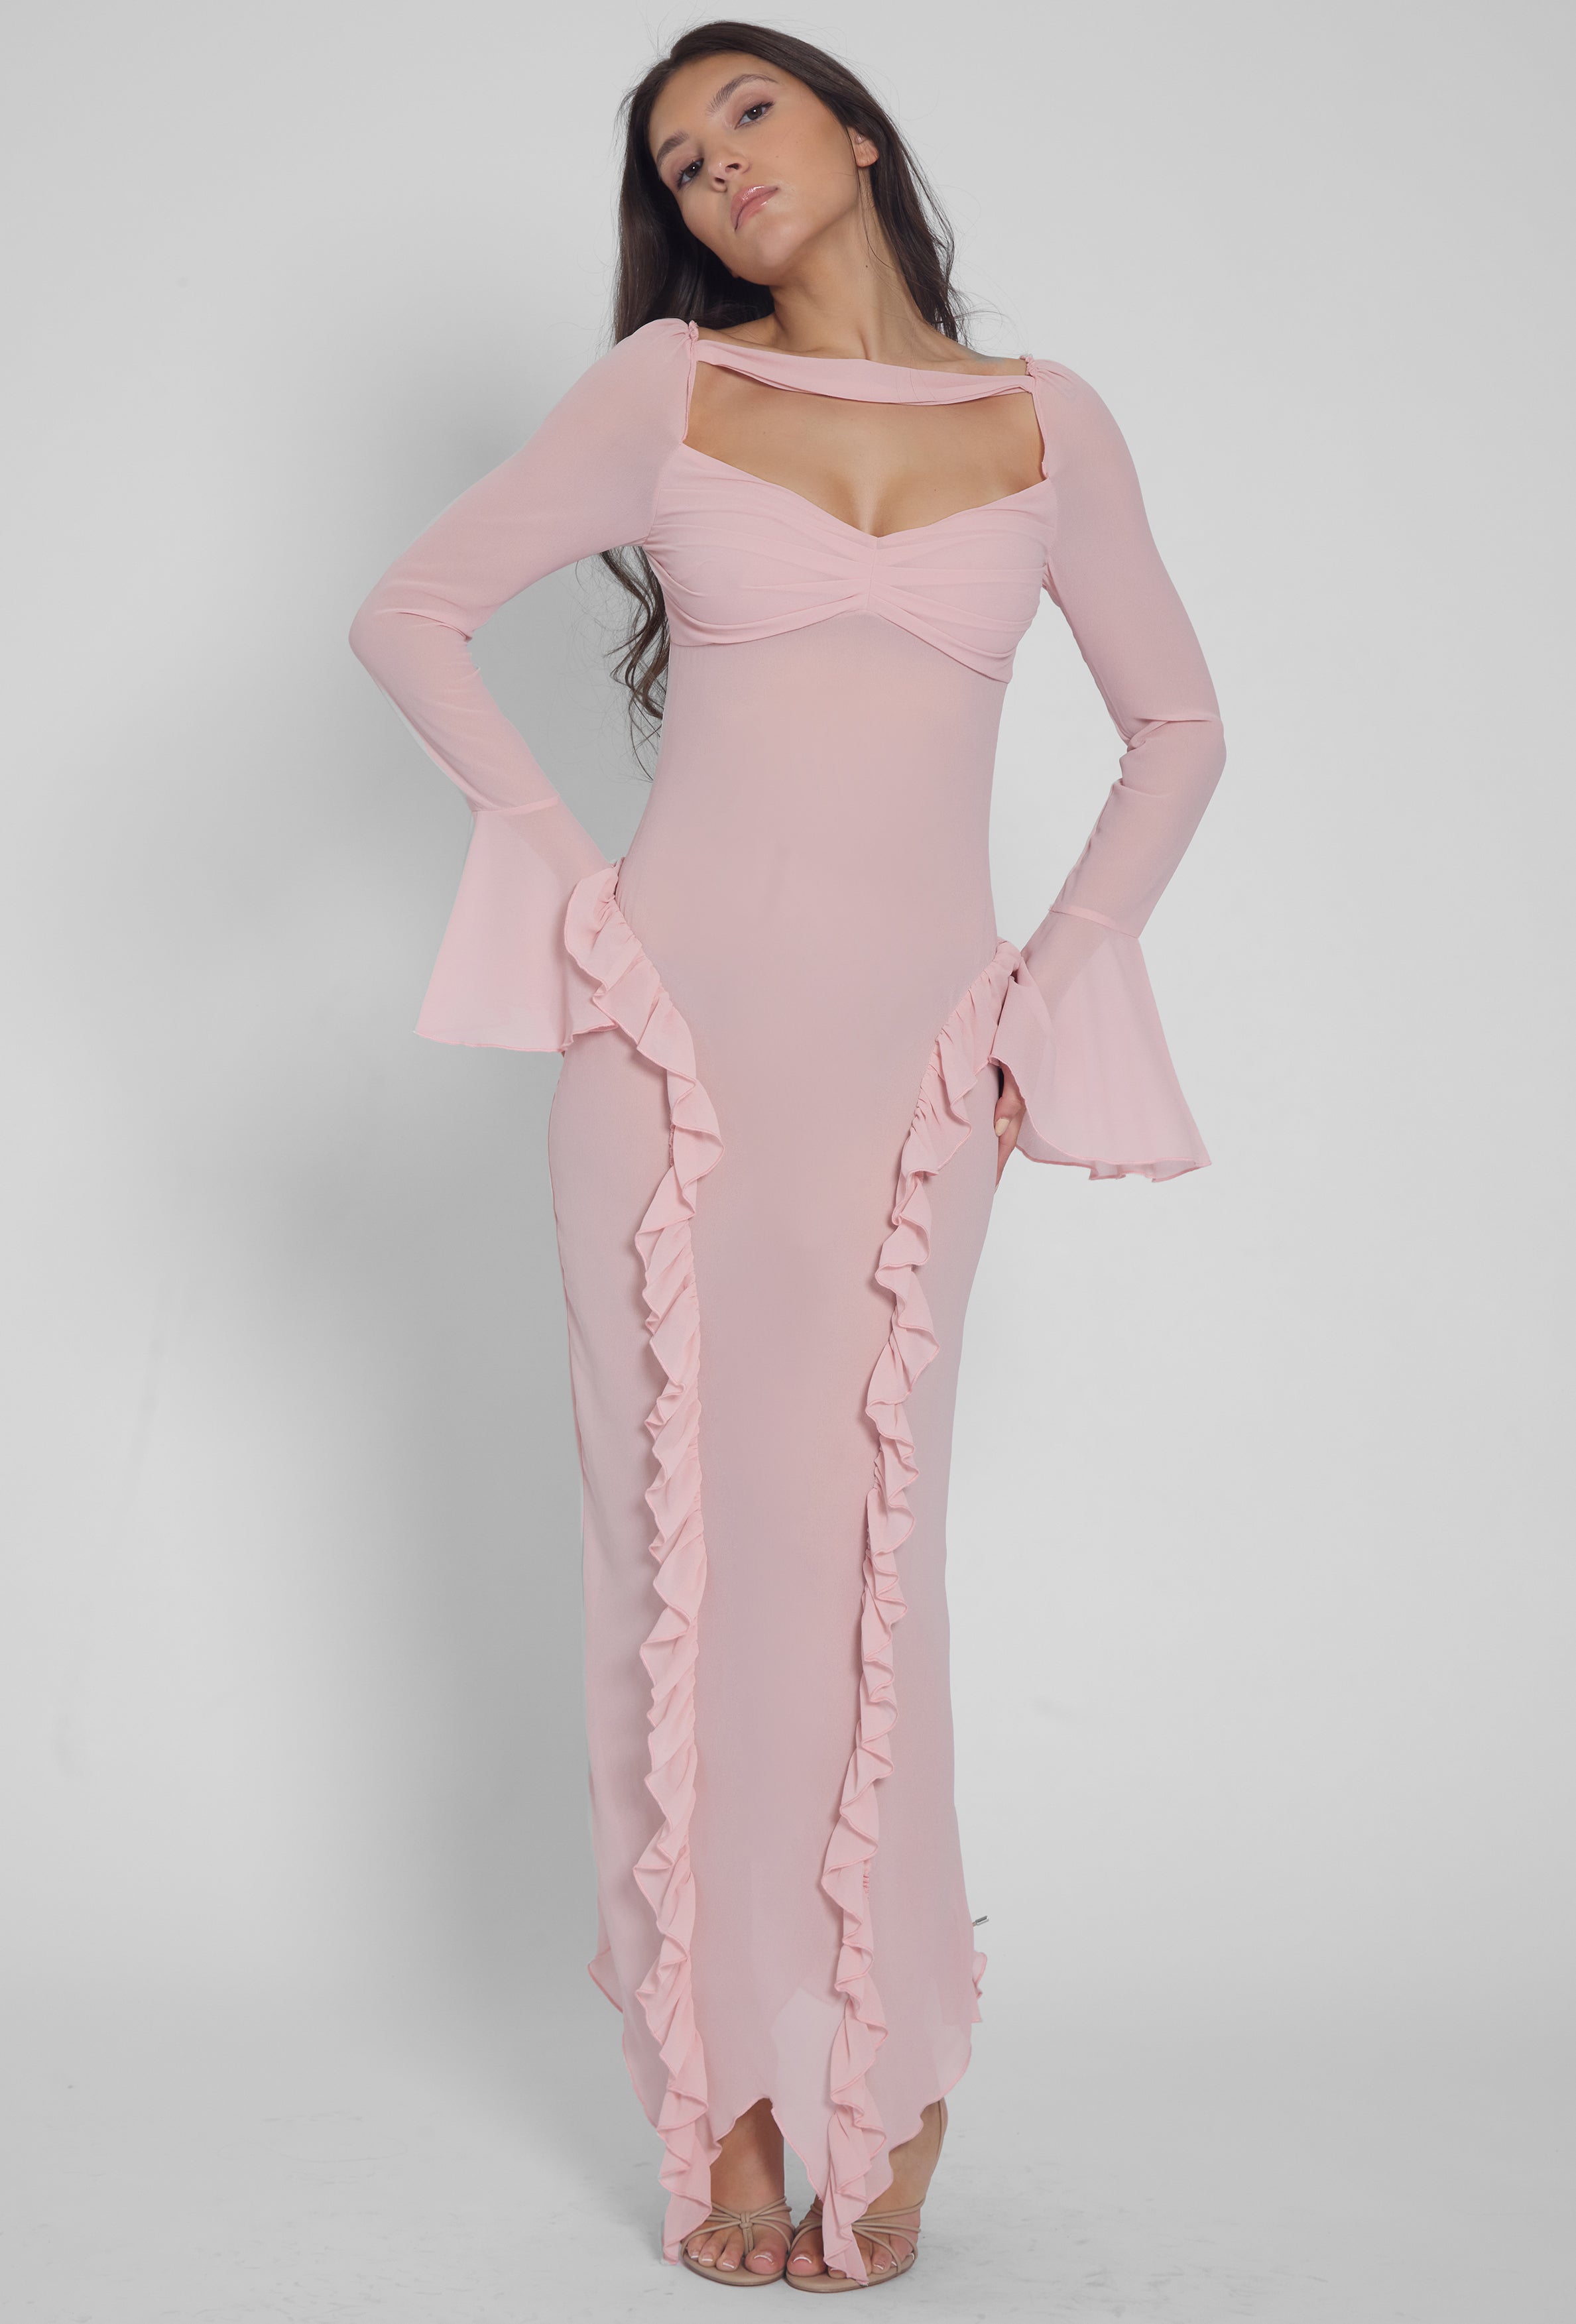 Reina Ruffle Chiffon Dress - Pink.